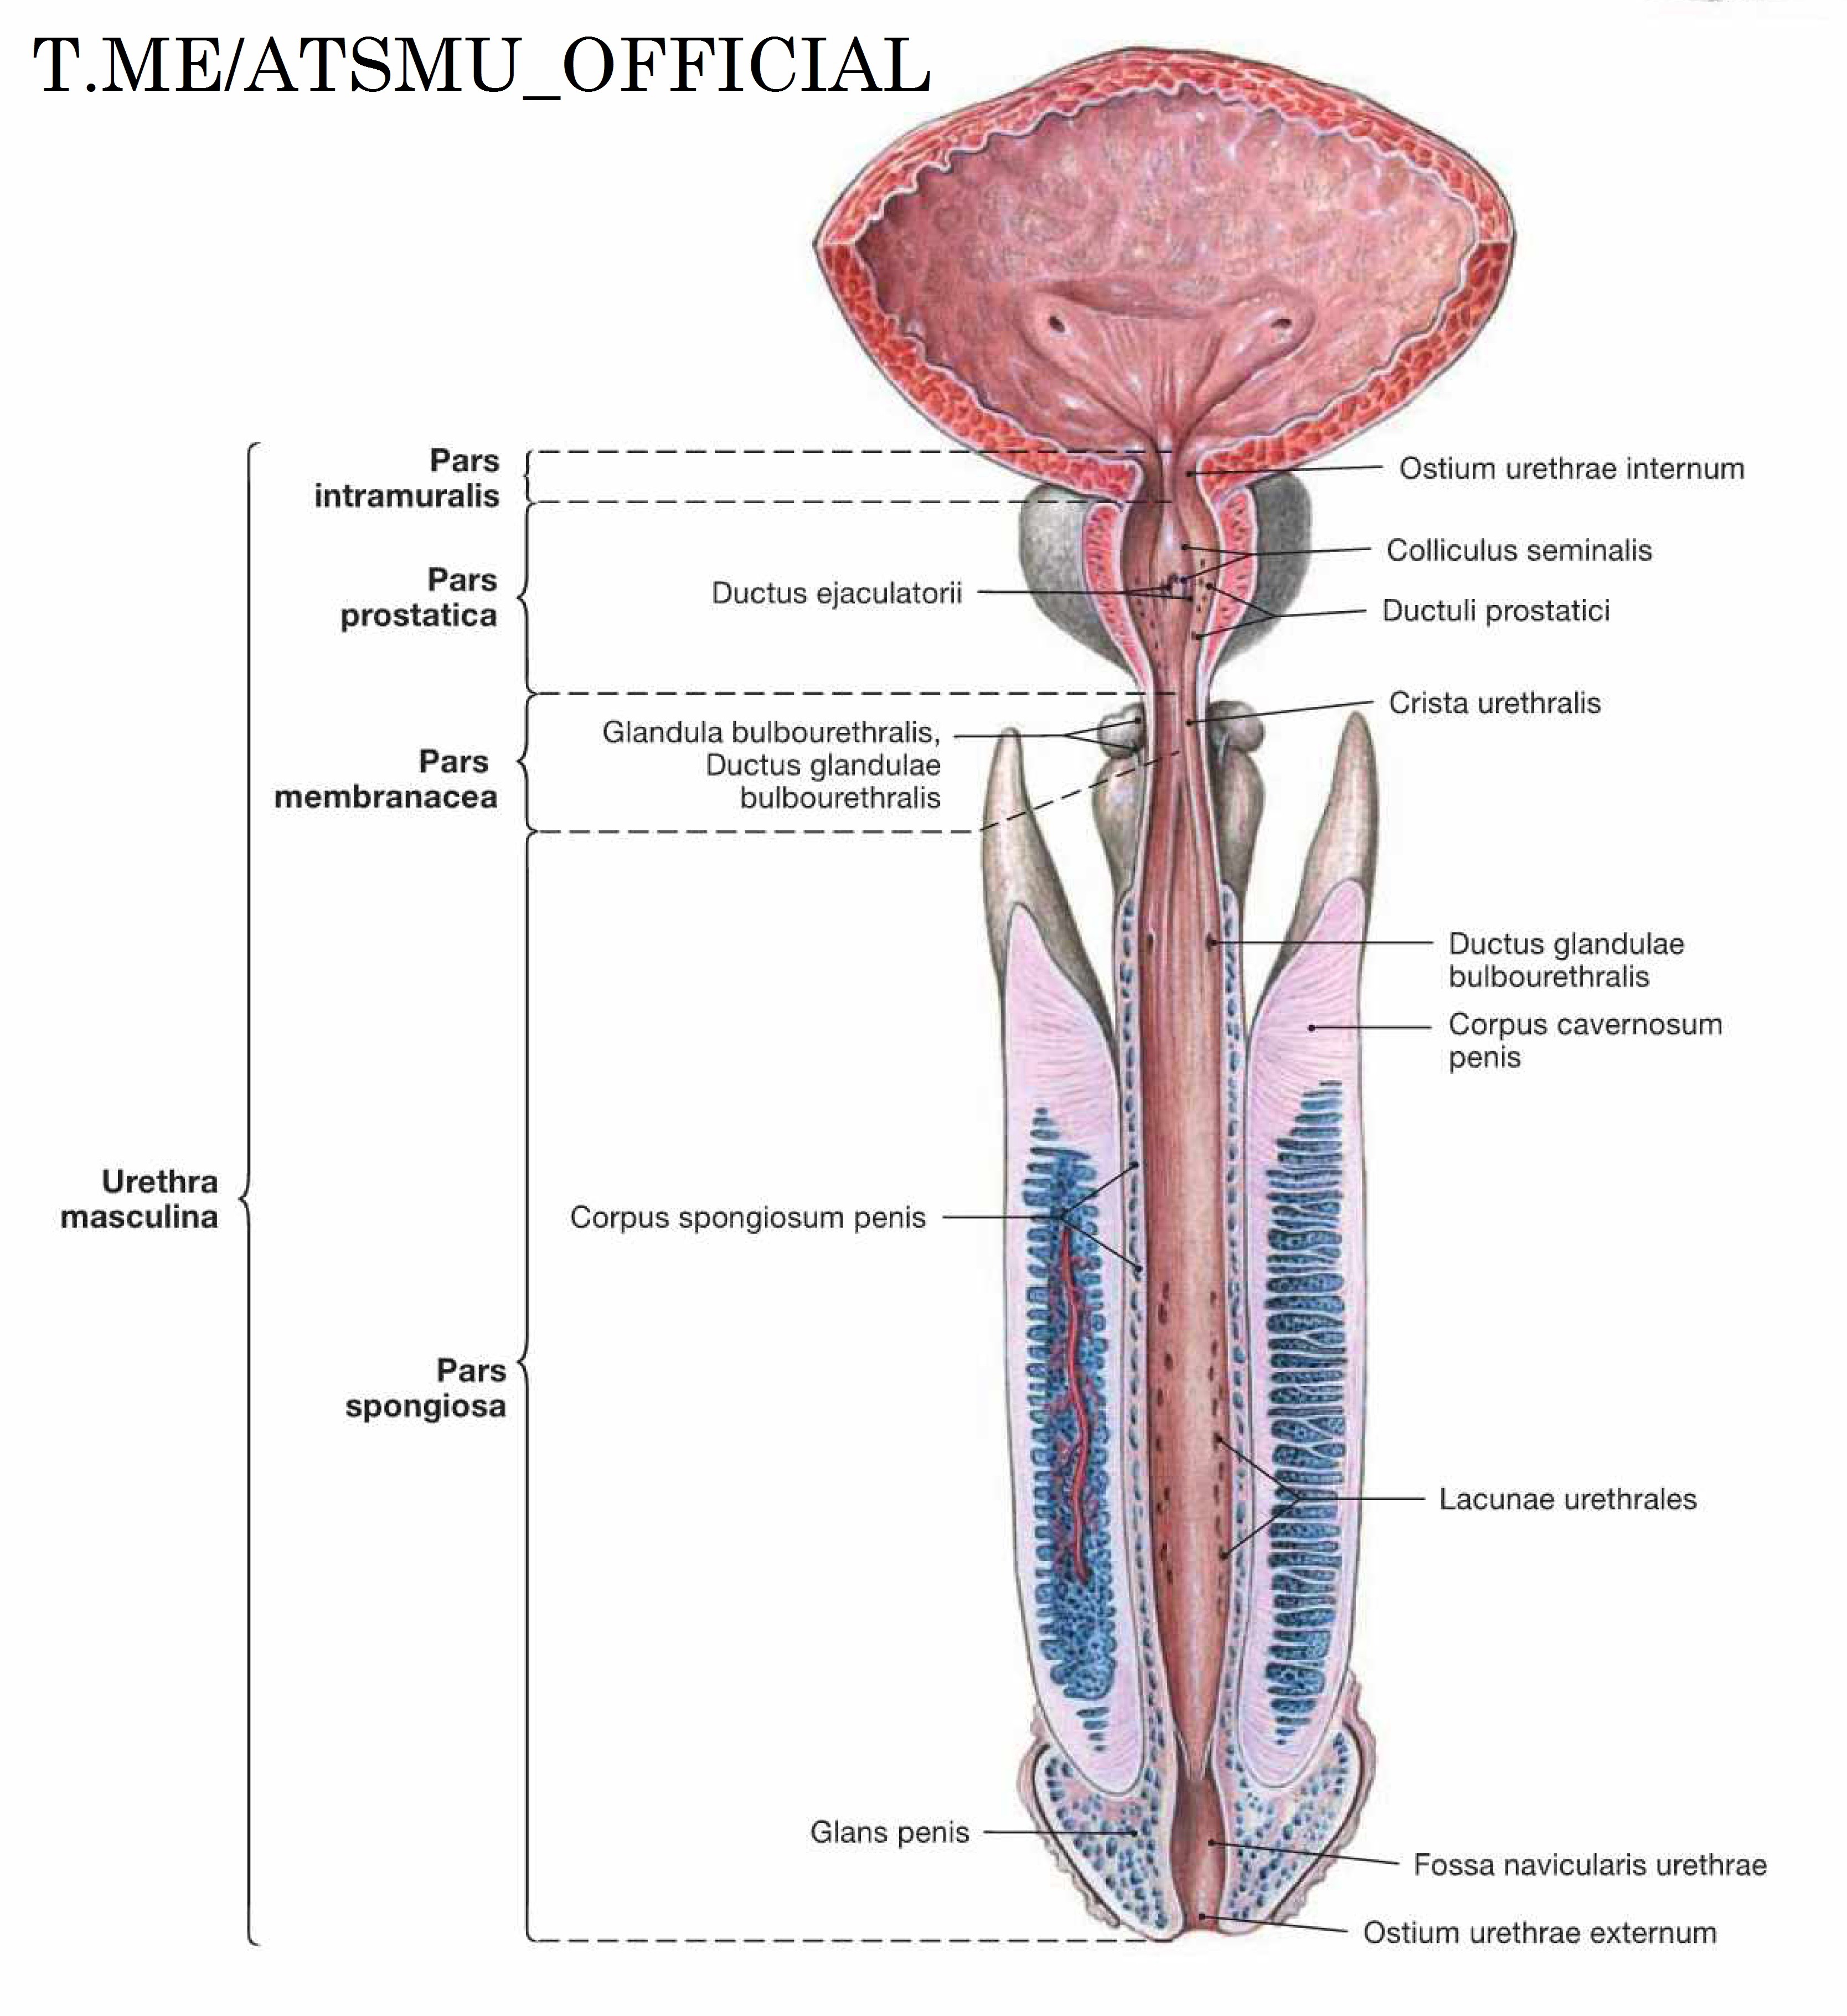 Pars membranacea urethrae masculinae